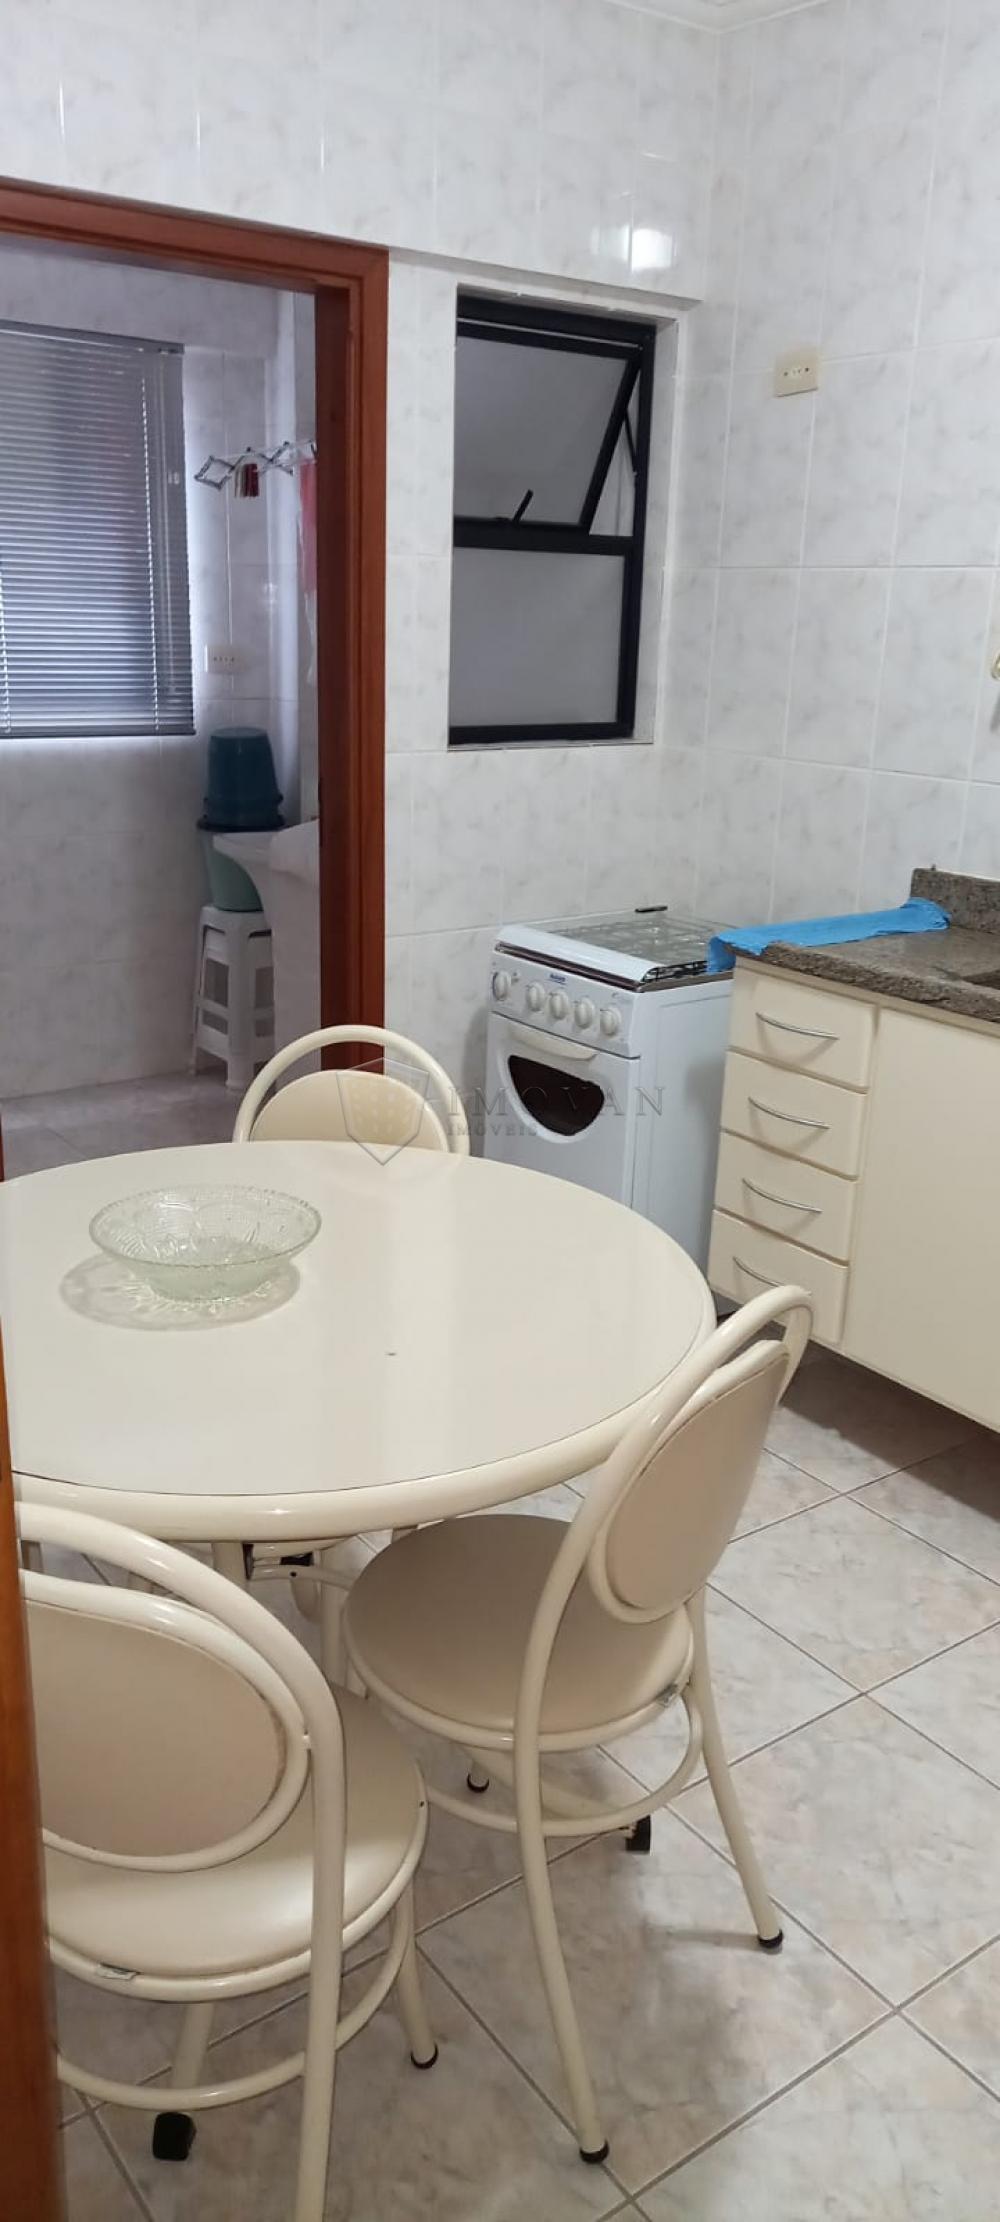 Comprar Apartamento / Padrão em Mongaguá R$ 300.000,00 - Foto 2